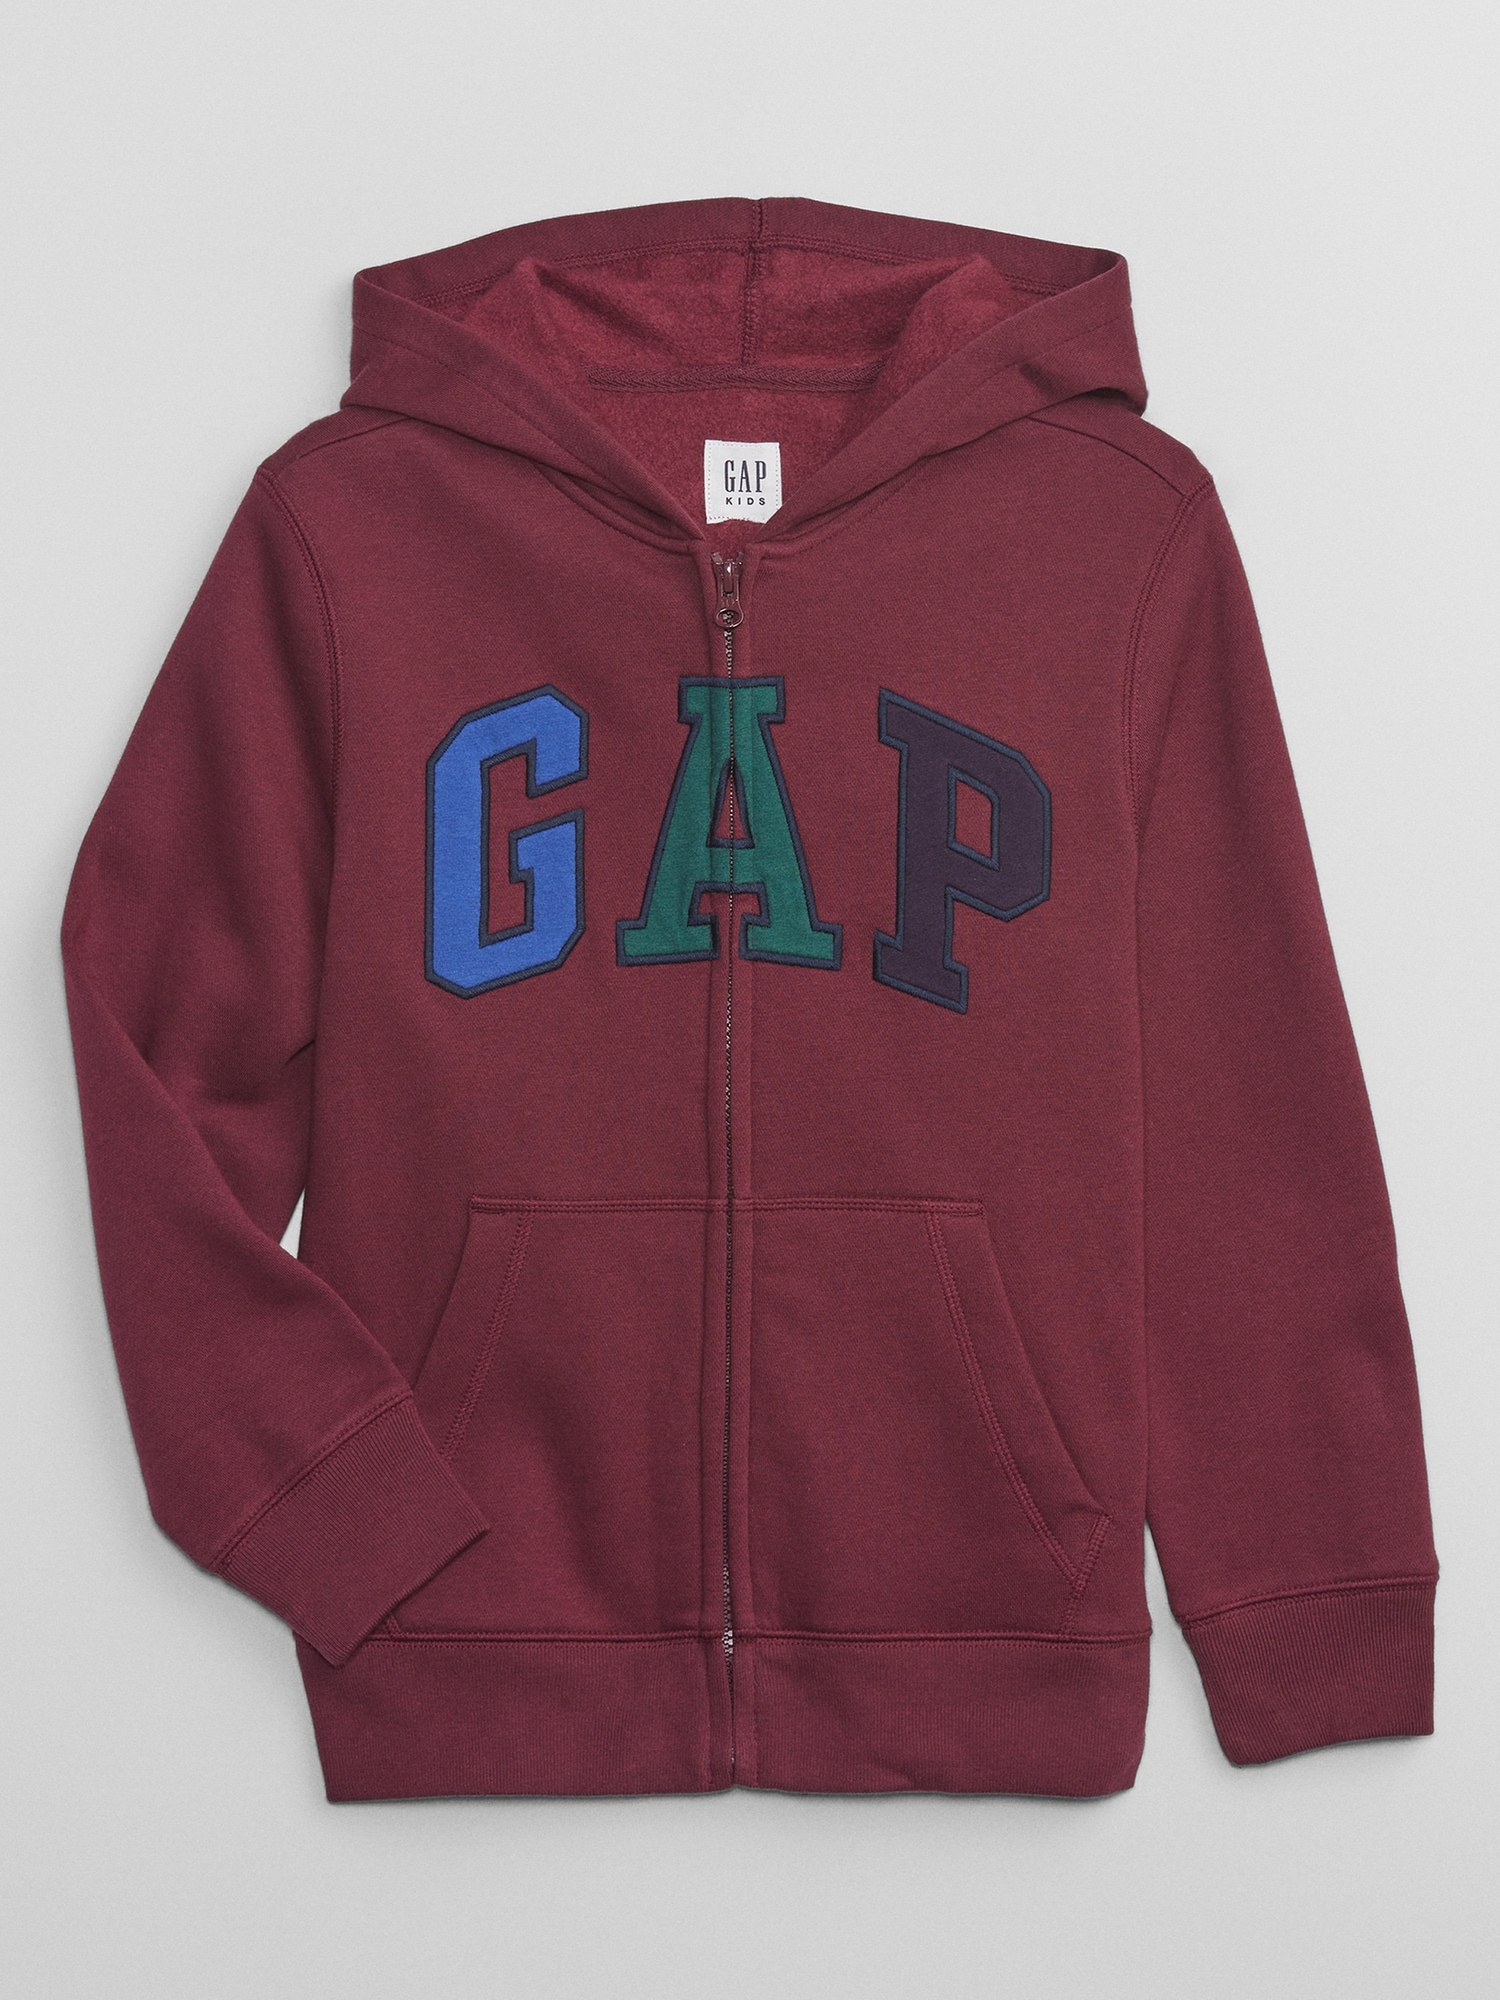 アウター・羽織り (ボーイズ 110-160cm) | Gap公式オンラインストア